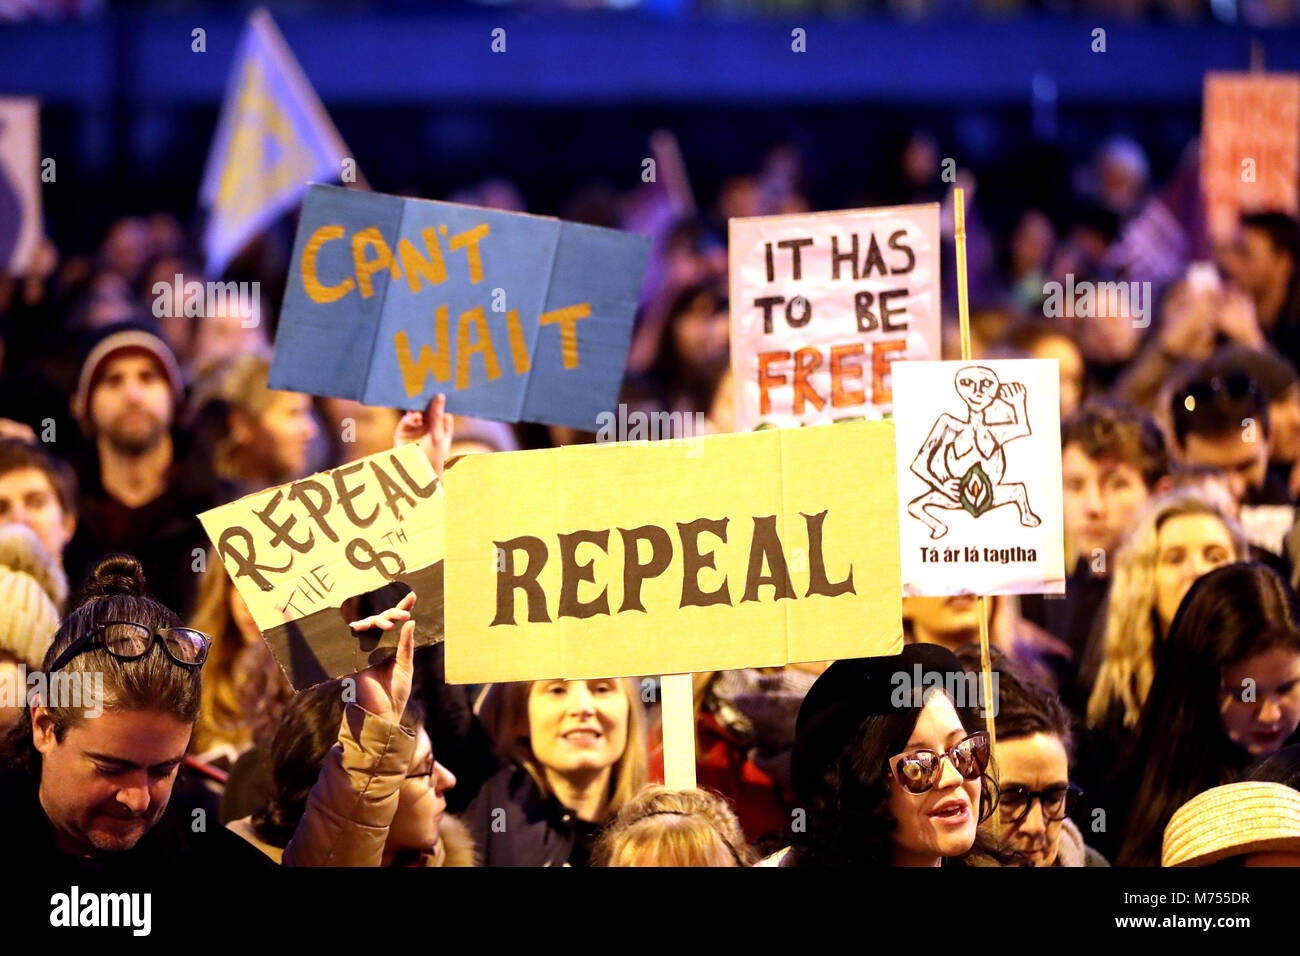 Menschen, die verschiedenen Zeichen, als Teilnehmer an einem Marsch durch das Stadtzentrum von Dublin fordert die Aufhebung der 8. Änderung der irischen Verfassung. Stockfoto